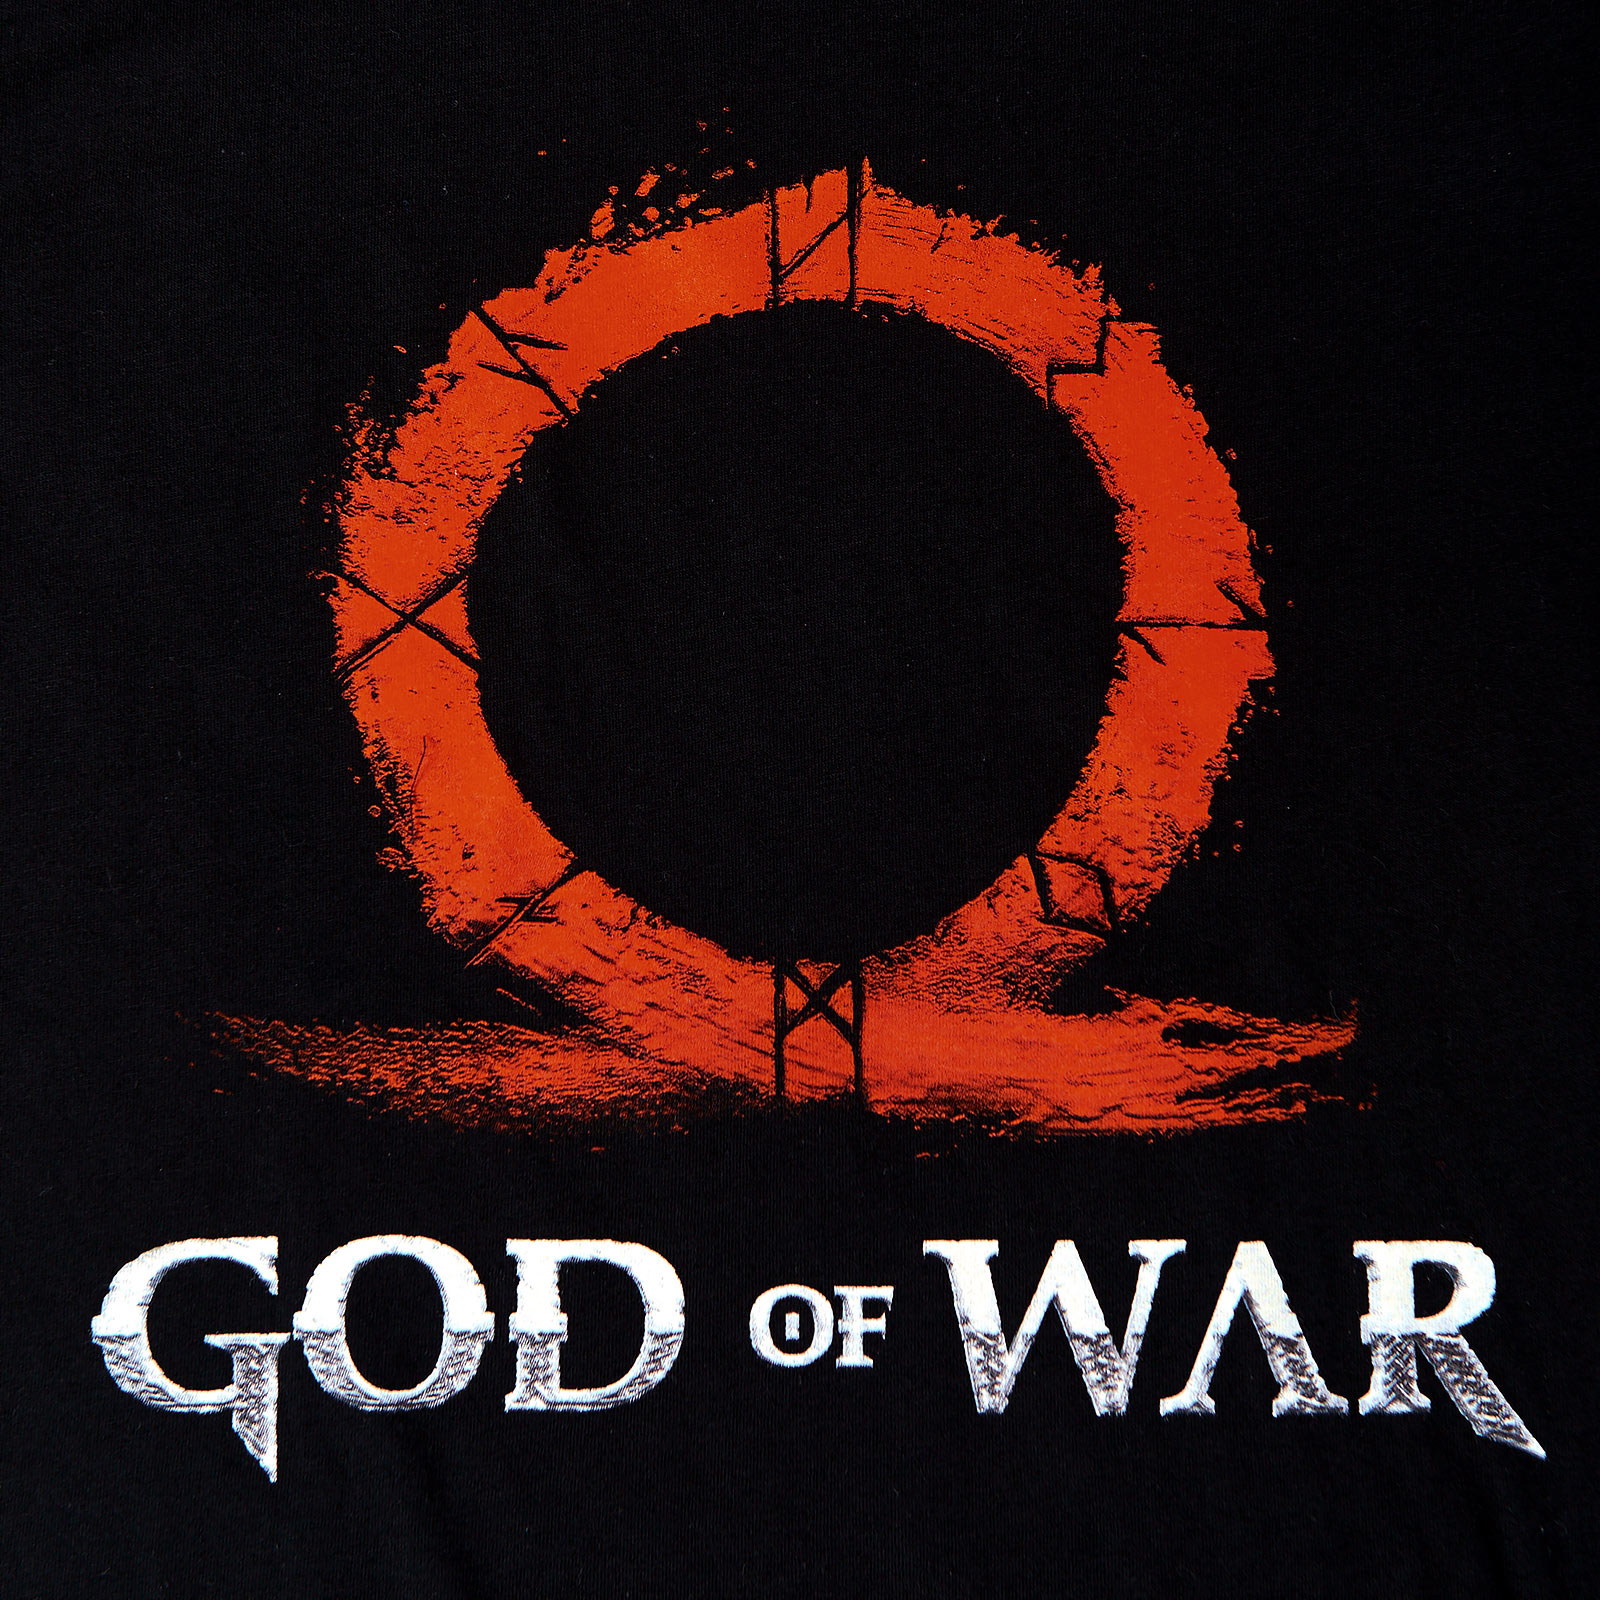 God of War - Rood Logo T-Shirt zwart